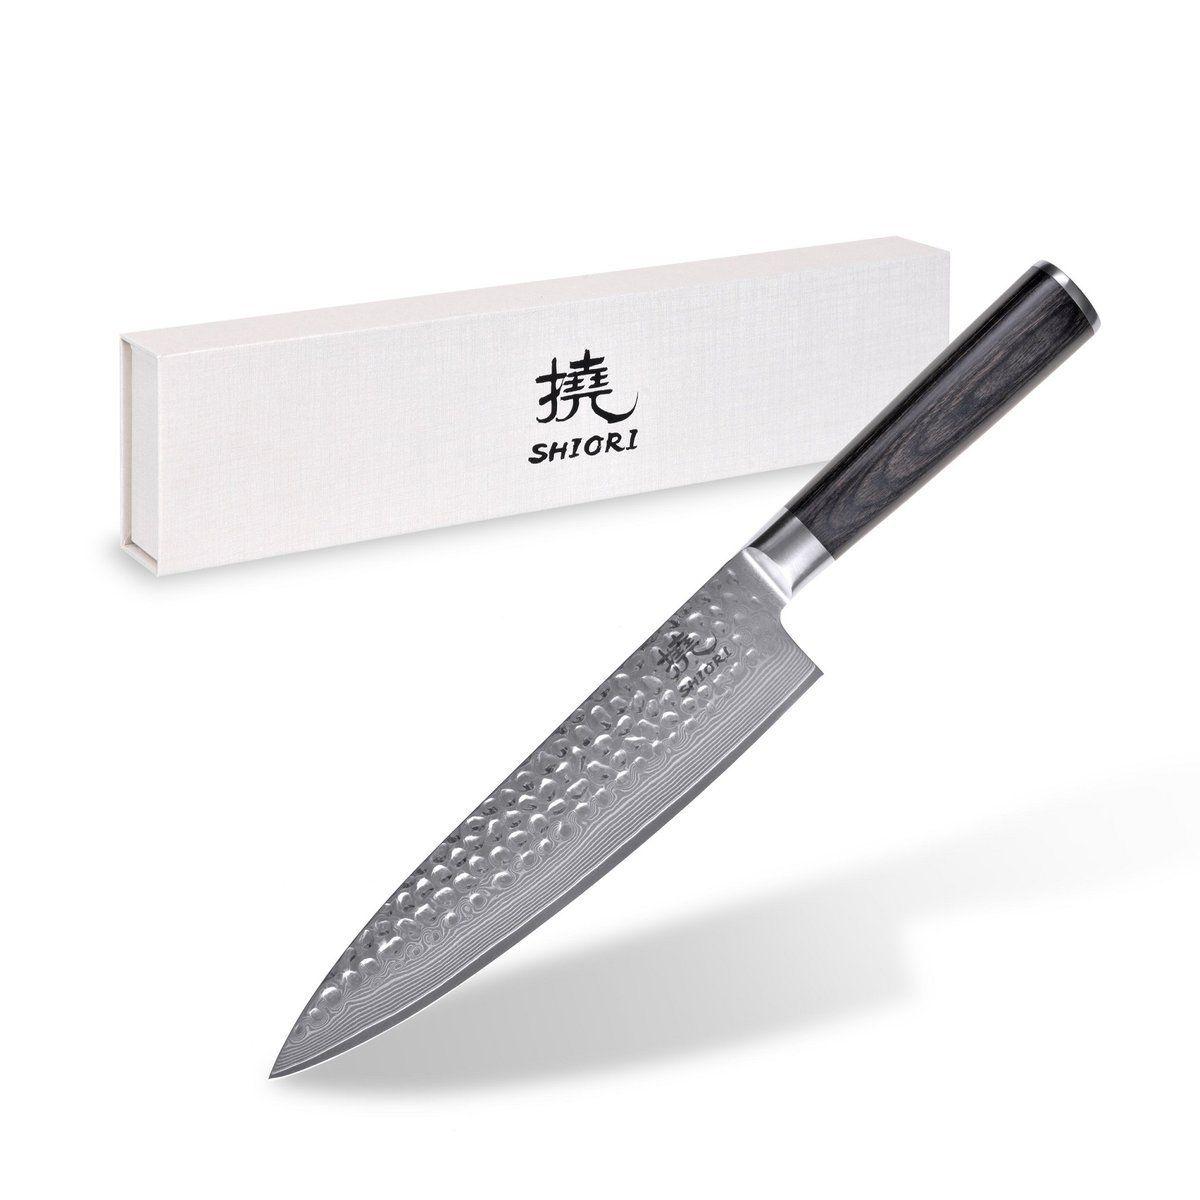 Professional chef knife Shiori Chairo Sifu